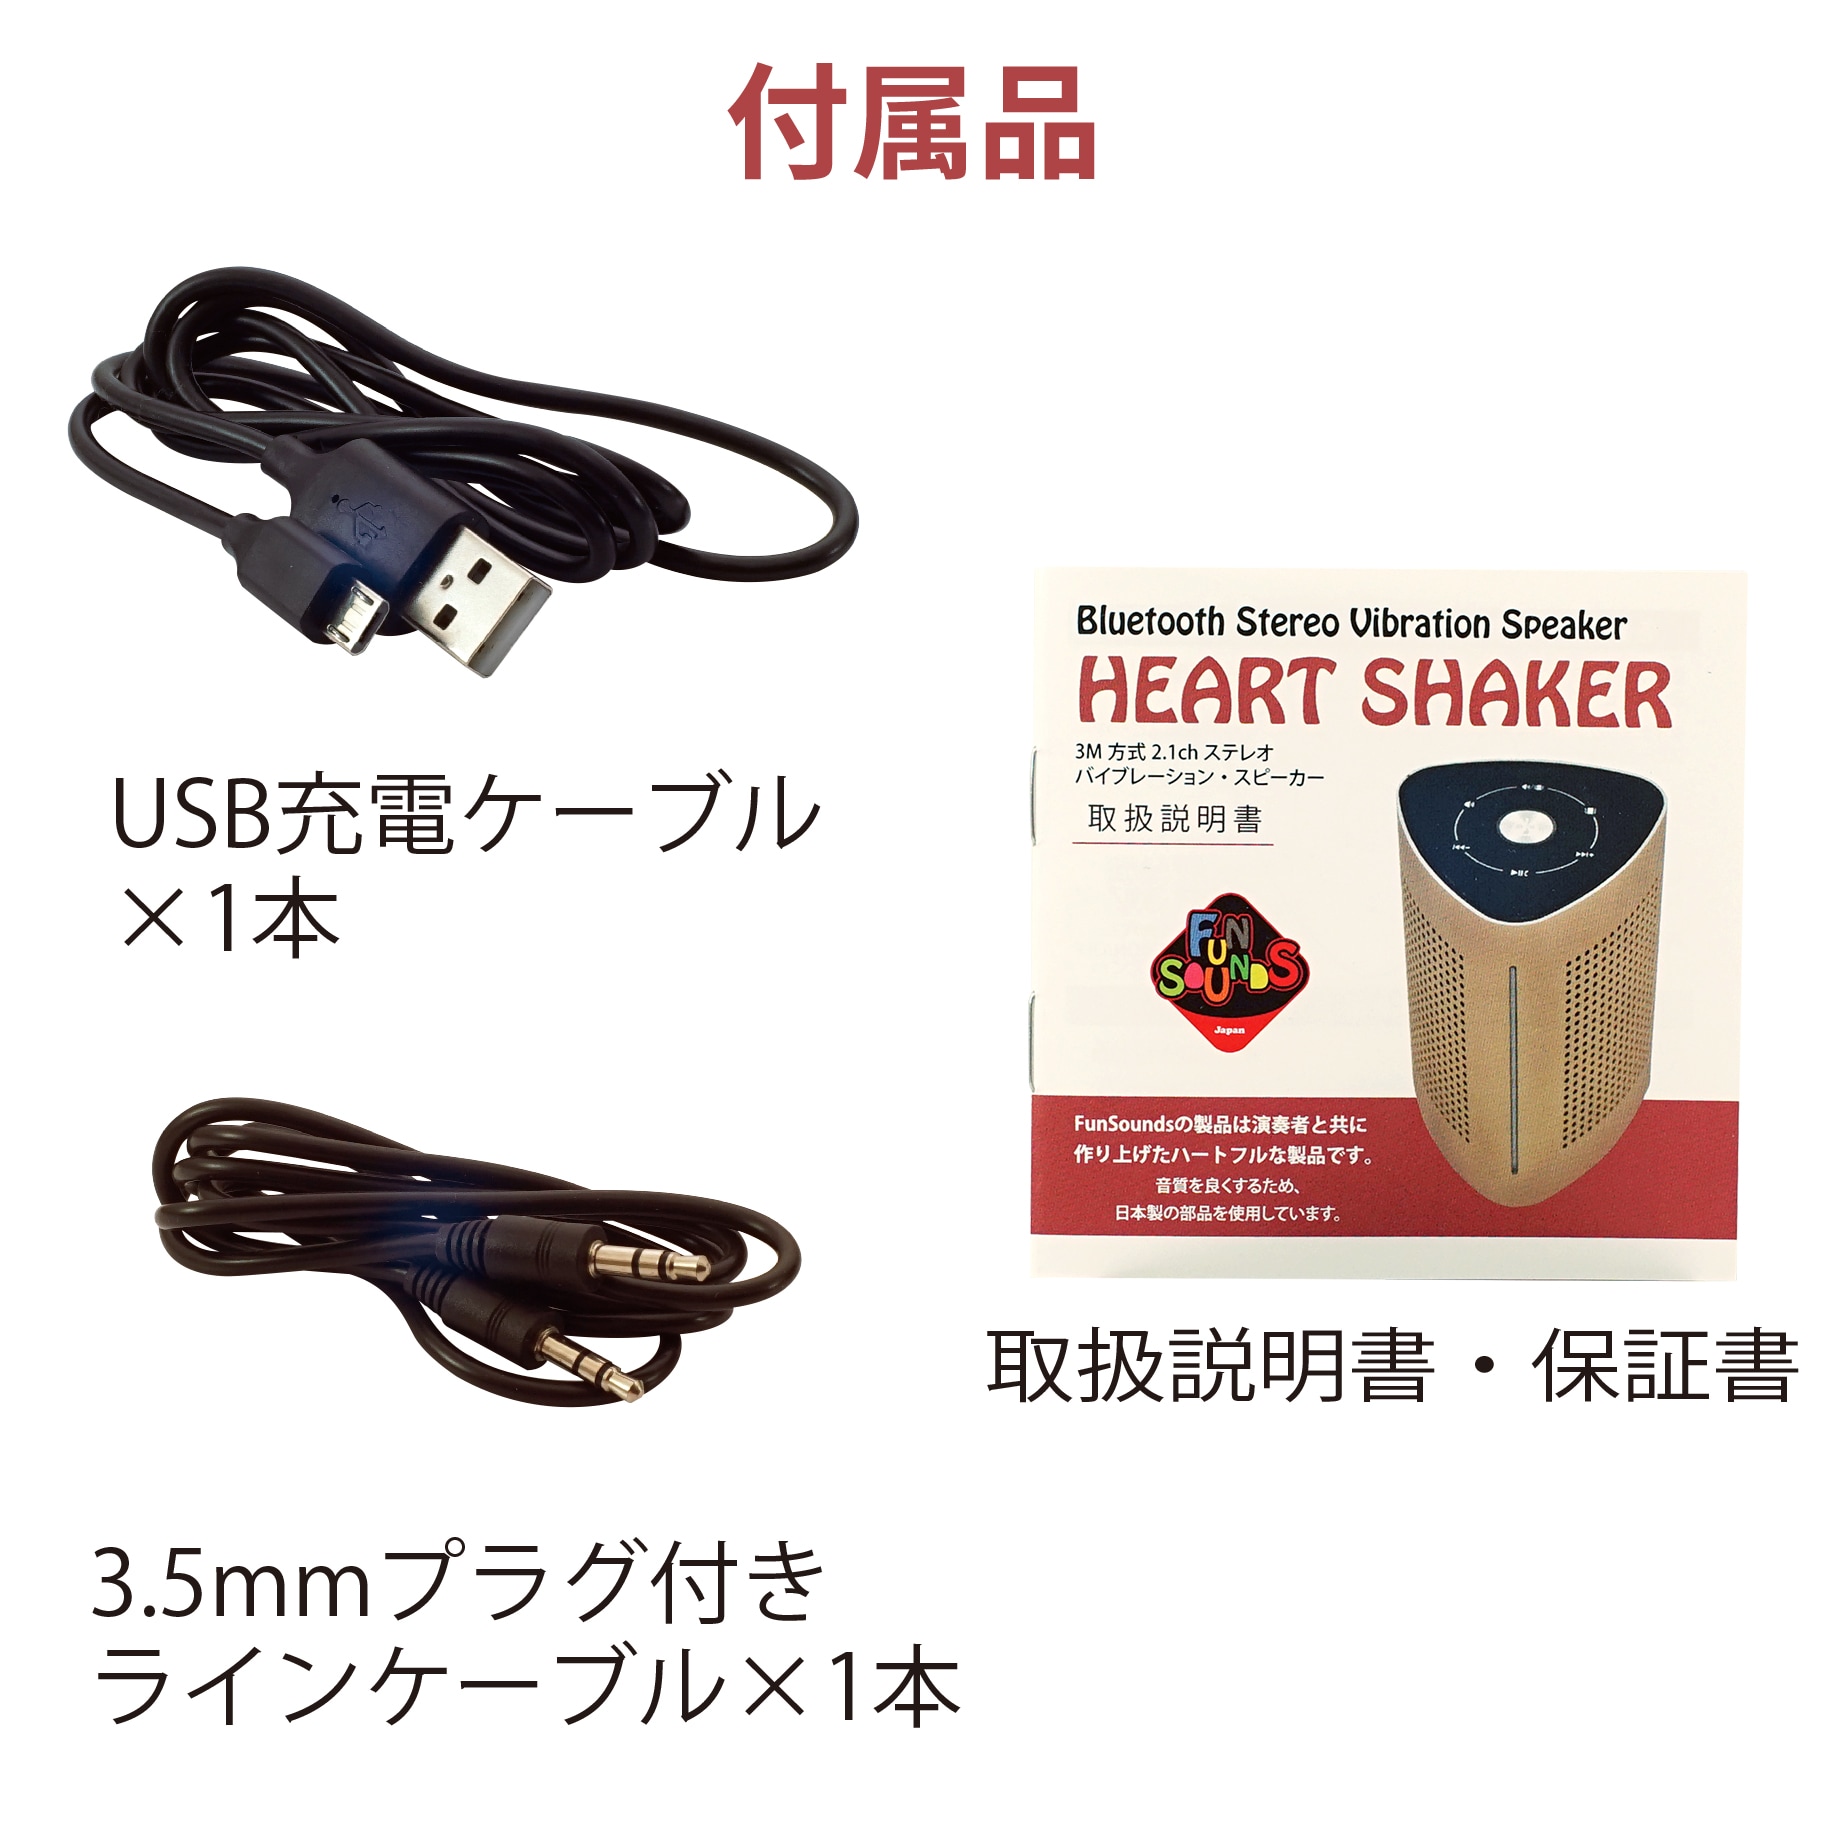 づけるだけ FunSounds chuya-online.com - 通販 - PayPayモール Heart Shaker コンプリート